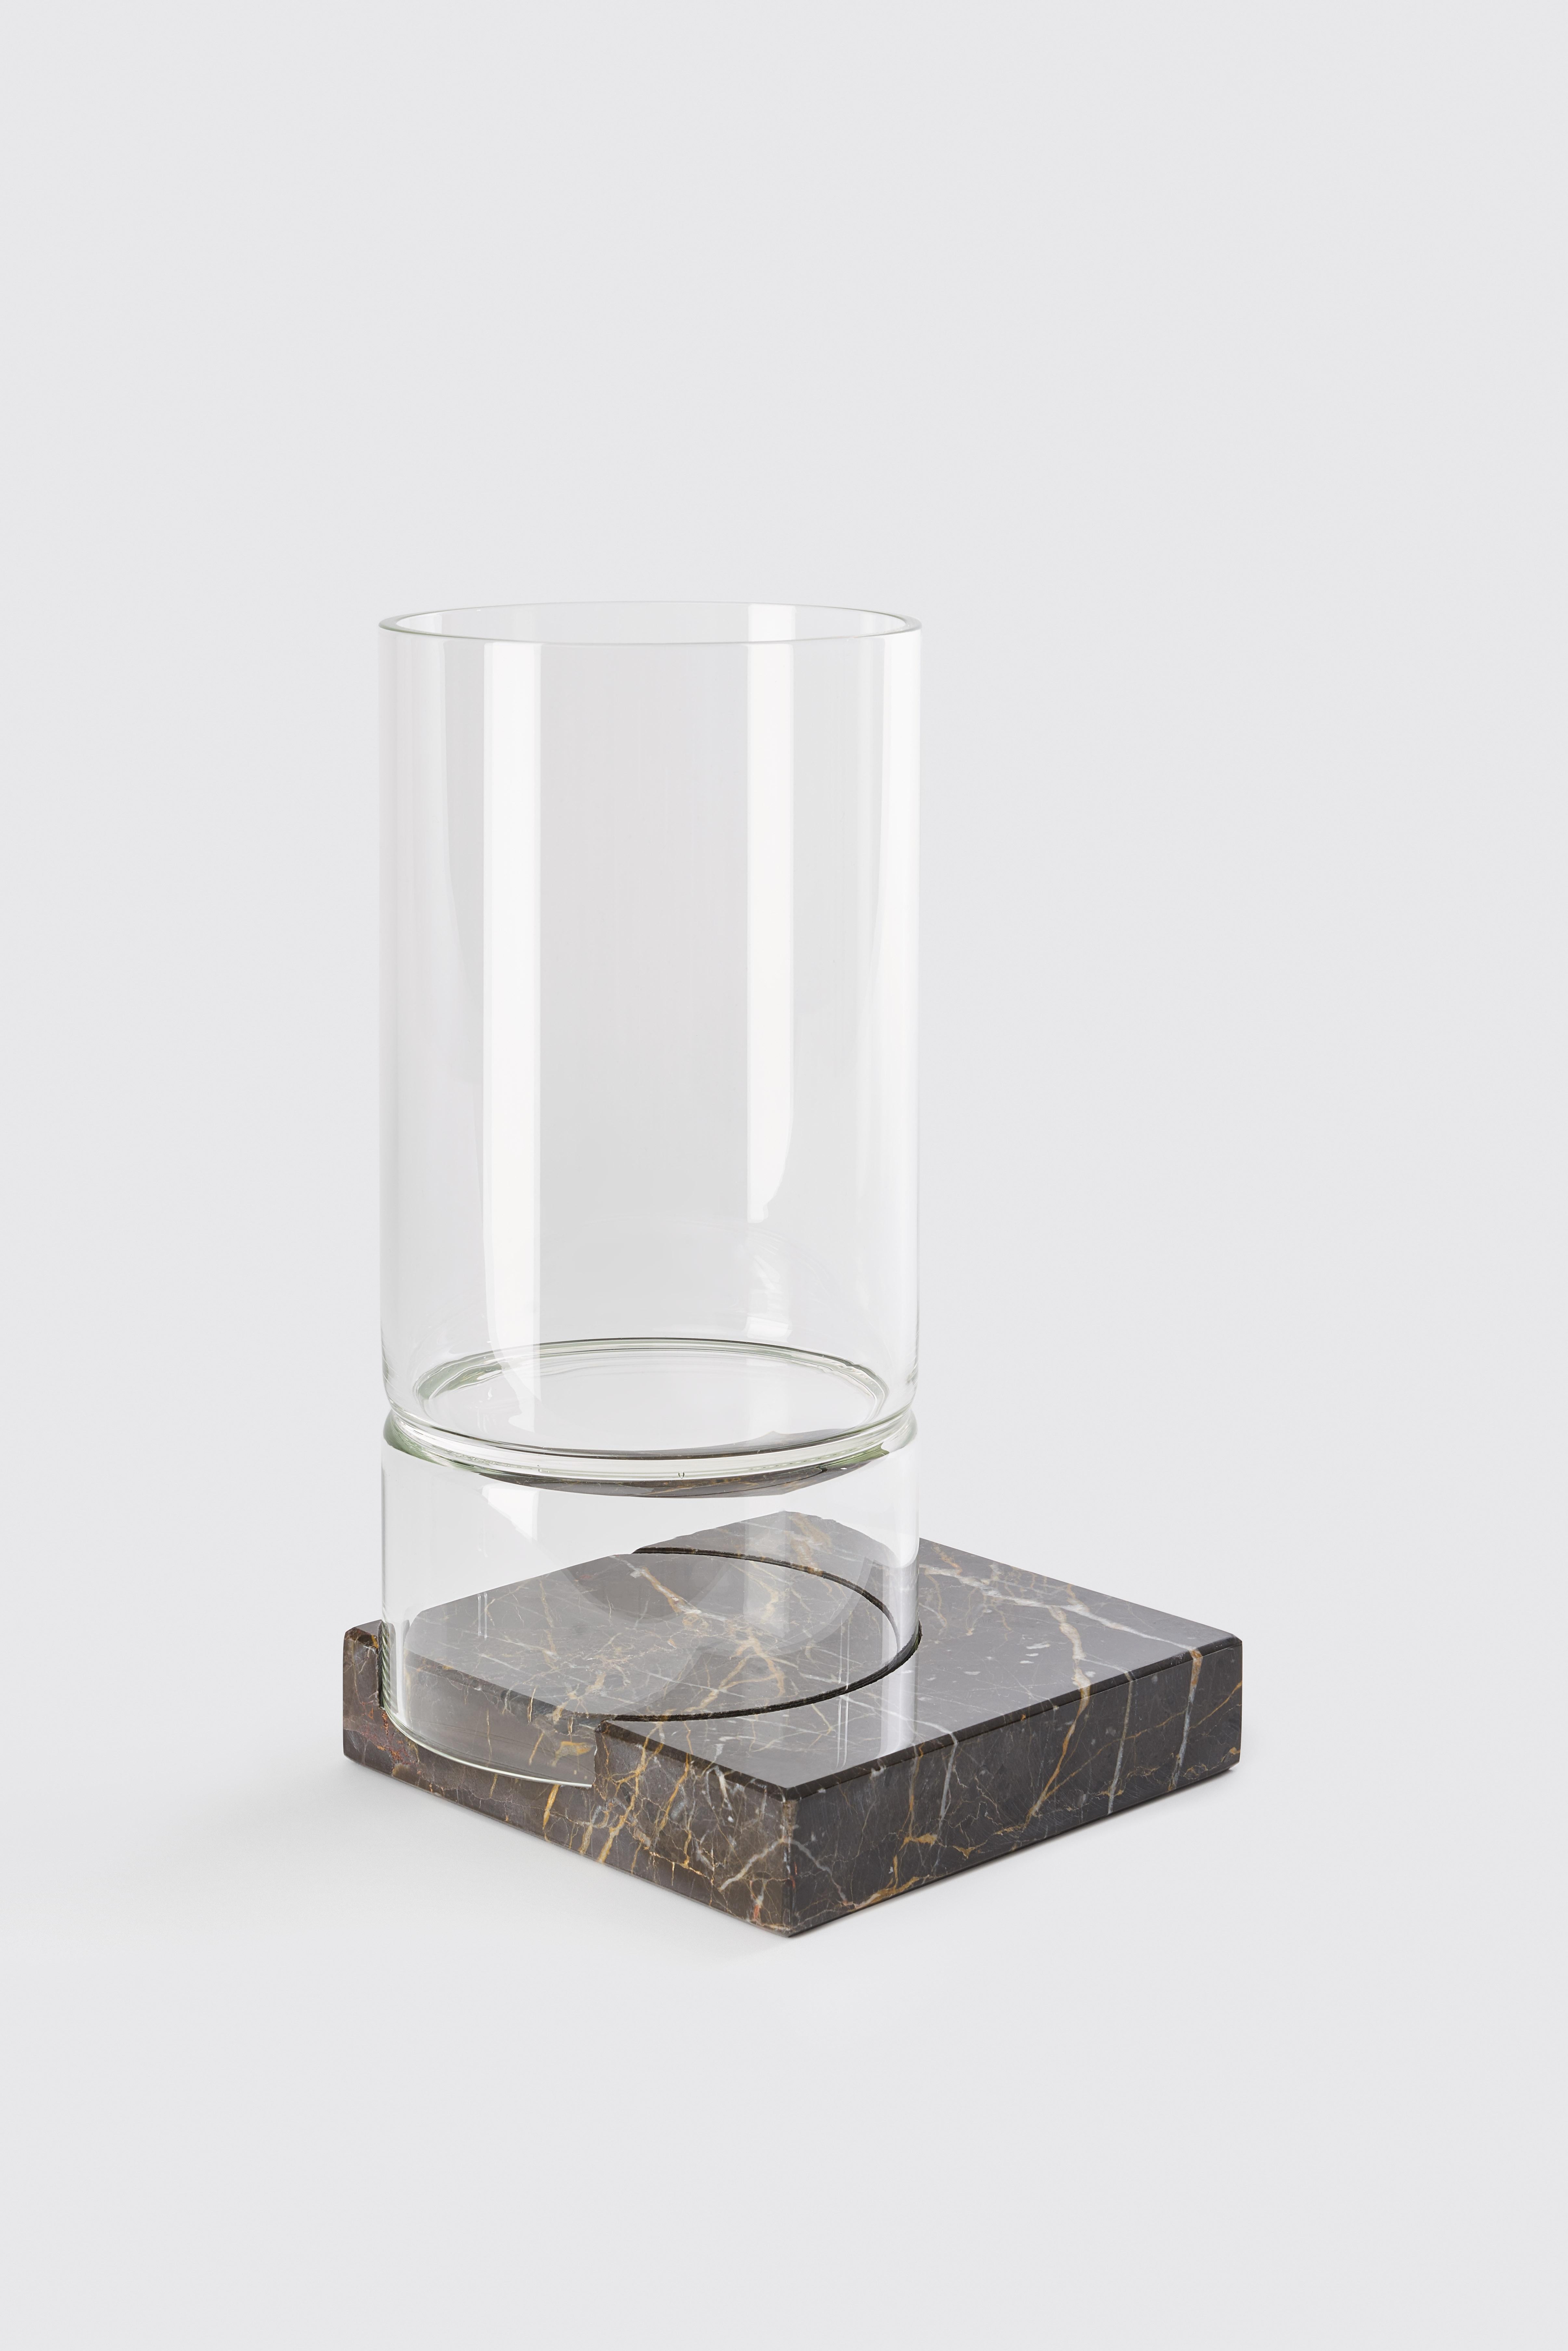 Vase Segno II - Giorgio Bonaguro
Dimensions : D 18 x L 18 x H 15 cm.
Matériaux : marbre foncé emperador, verre.

Une collection née du désir de récupérer les déchets de traitement du marbre : de petites portions de dalles de différentes épaisseurs,